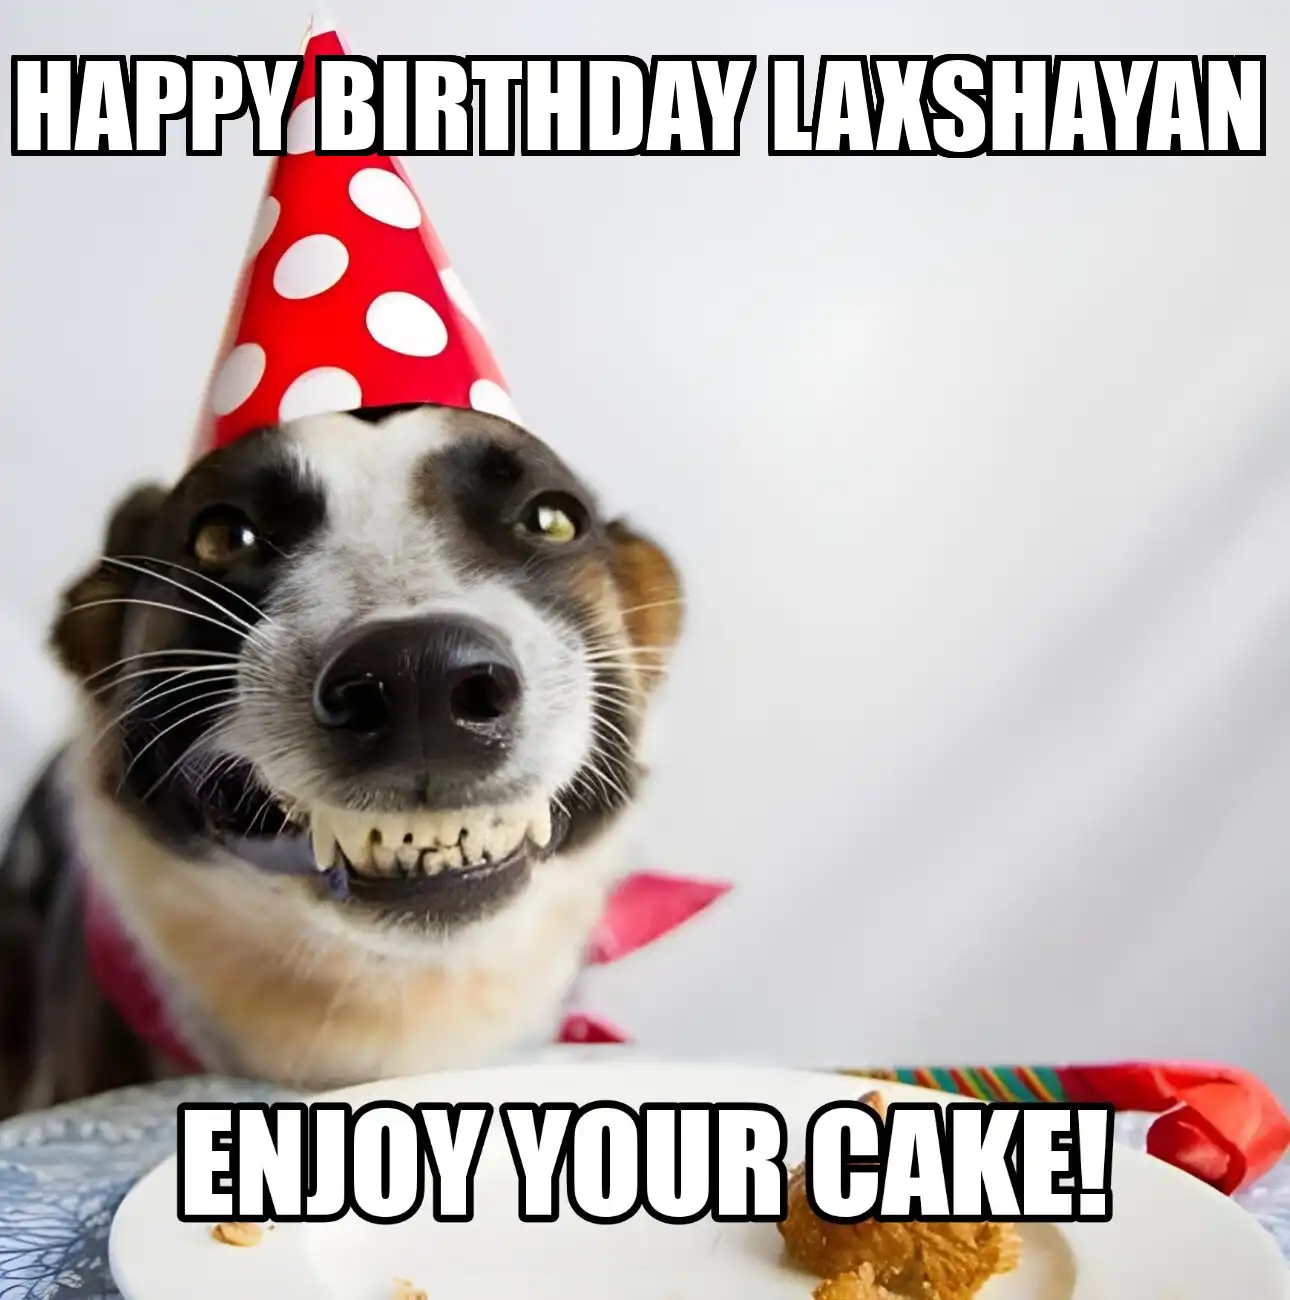 Happy Birthday Laxshayan Enjoy Your Cake Dog Meme